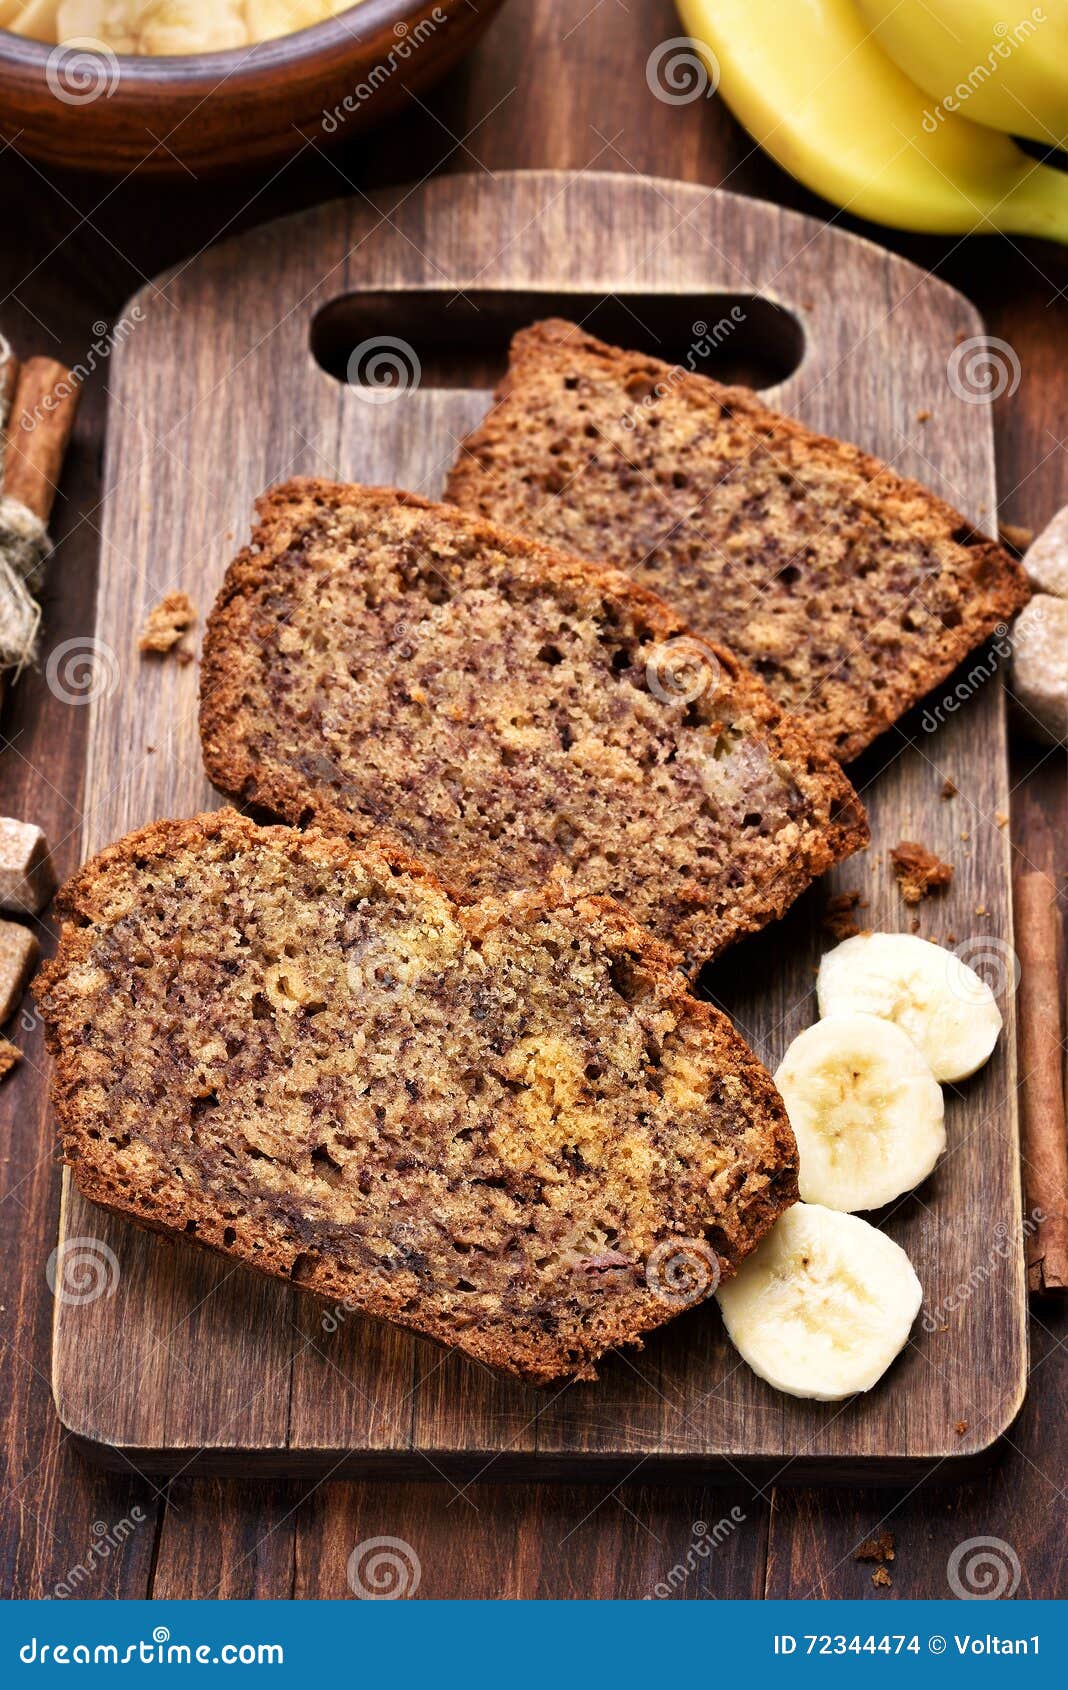 在切片的黄油香蕉面包 库存照片. 图片 包括有 营养, 剪切, 大蕉, 健康, 会议室, 蛋糕, 烹调, 食物 - 76358888